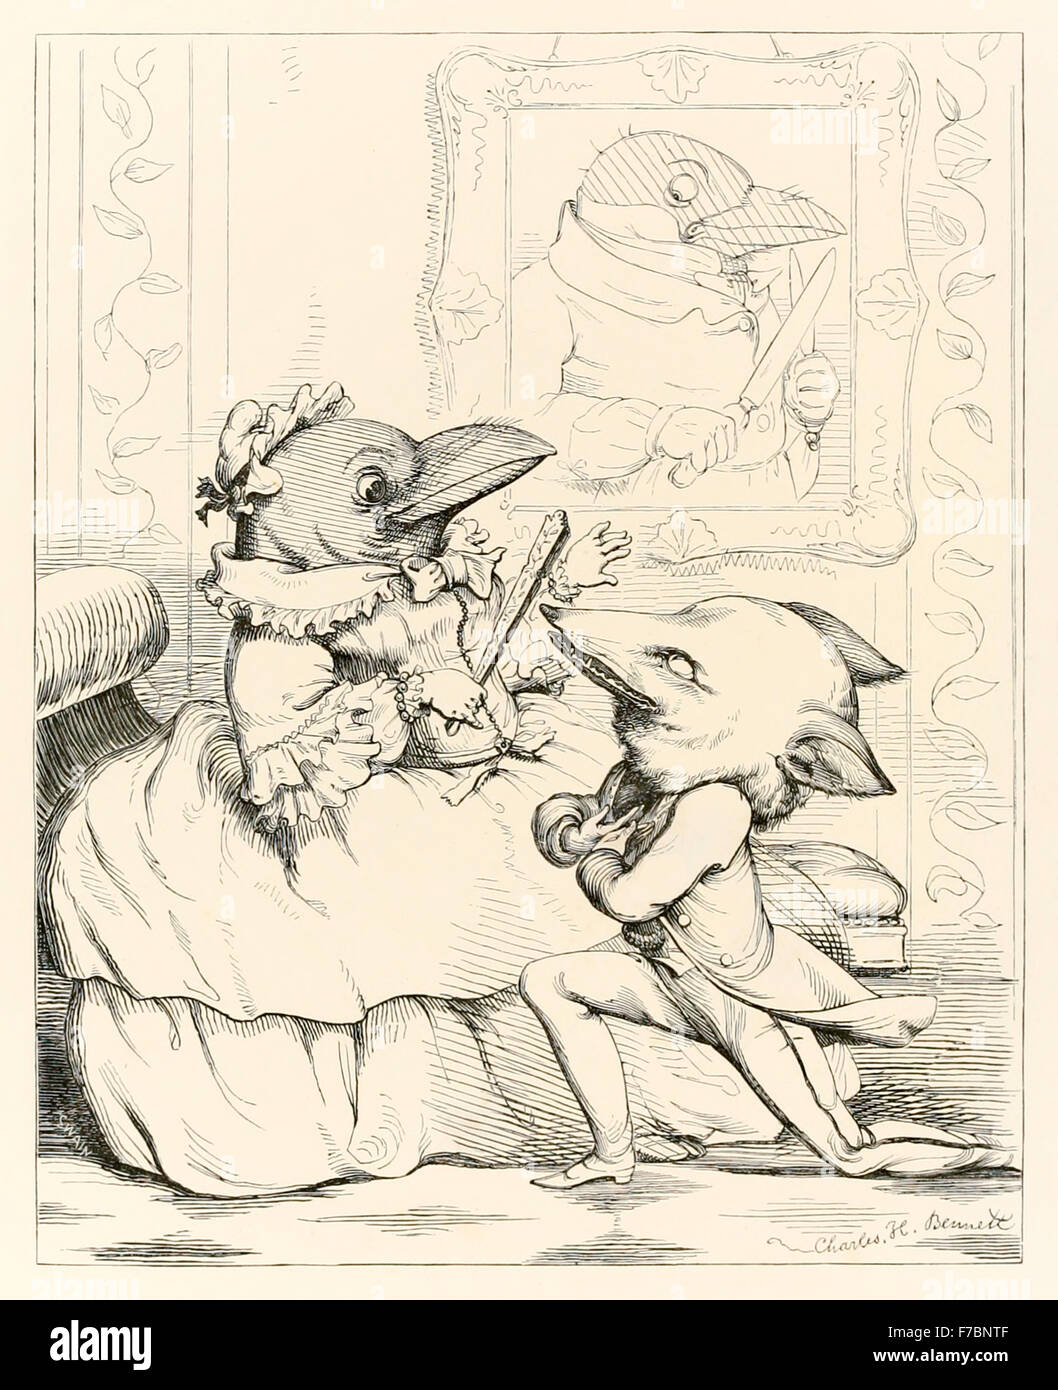 "Der Fuchs und der Rabe" von "Die Fabeln von Aesop und andere übersetzt in Human Nature", illustriert von Charles H. Bennett (1828 – 1867), Fuchs, wollen es für sich selbst, schmeichelt die Krähe, nannte es schön und Frage mich, ob seine Stimme so süß ist zu entsprechen. Wenn es aus einem Caw lässt, der Käse fällt und ist von der Fuchs verschlungen. Moral: Hören Sie nicht auf Schmeichelei. Siehe Beschreibung für mehr Informationen. Stockfoto